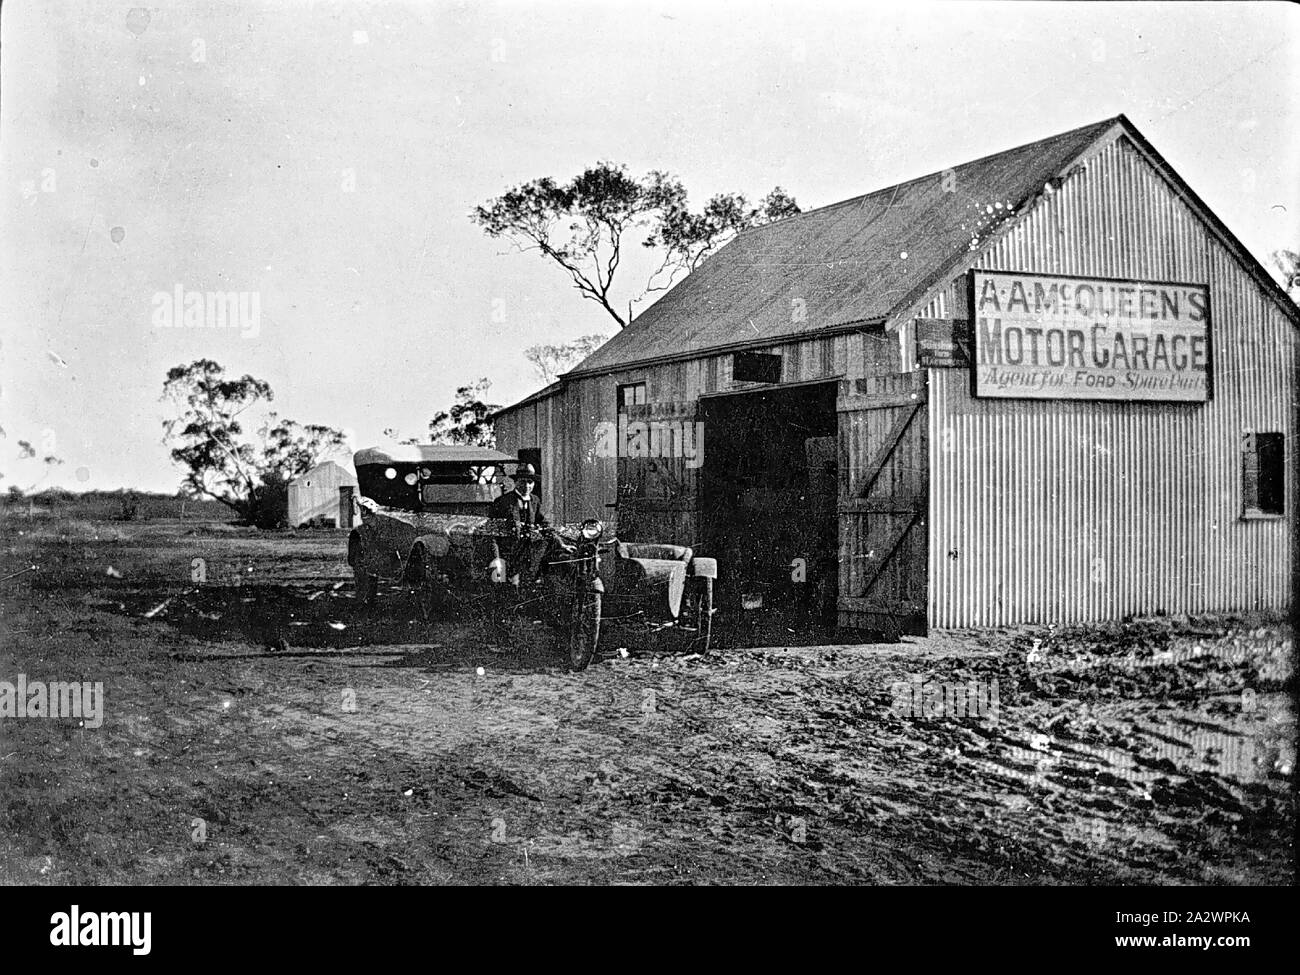 Negativo - R.A. McQueen il garage, Manangatang, Victoria, 1922, il motore il garage è un di legno e di ferro ondulato apparentemente edificio situato in aperta campagna. Un uomo con un auto e ciclo motore sorge nella parte anteriore dell'edificio Foto Stock